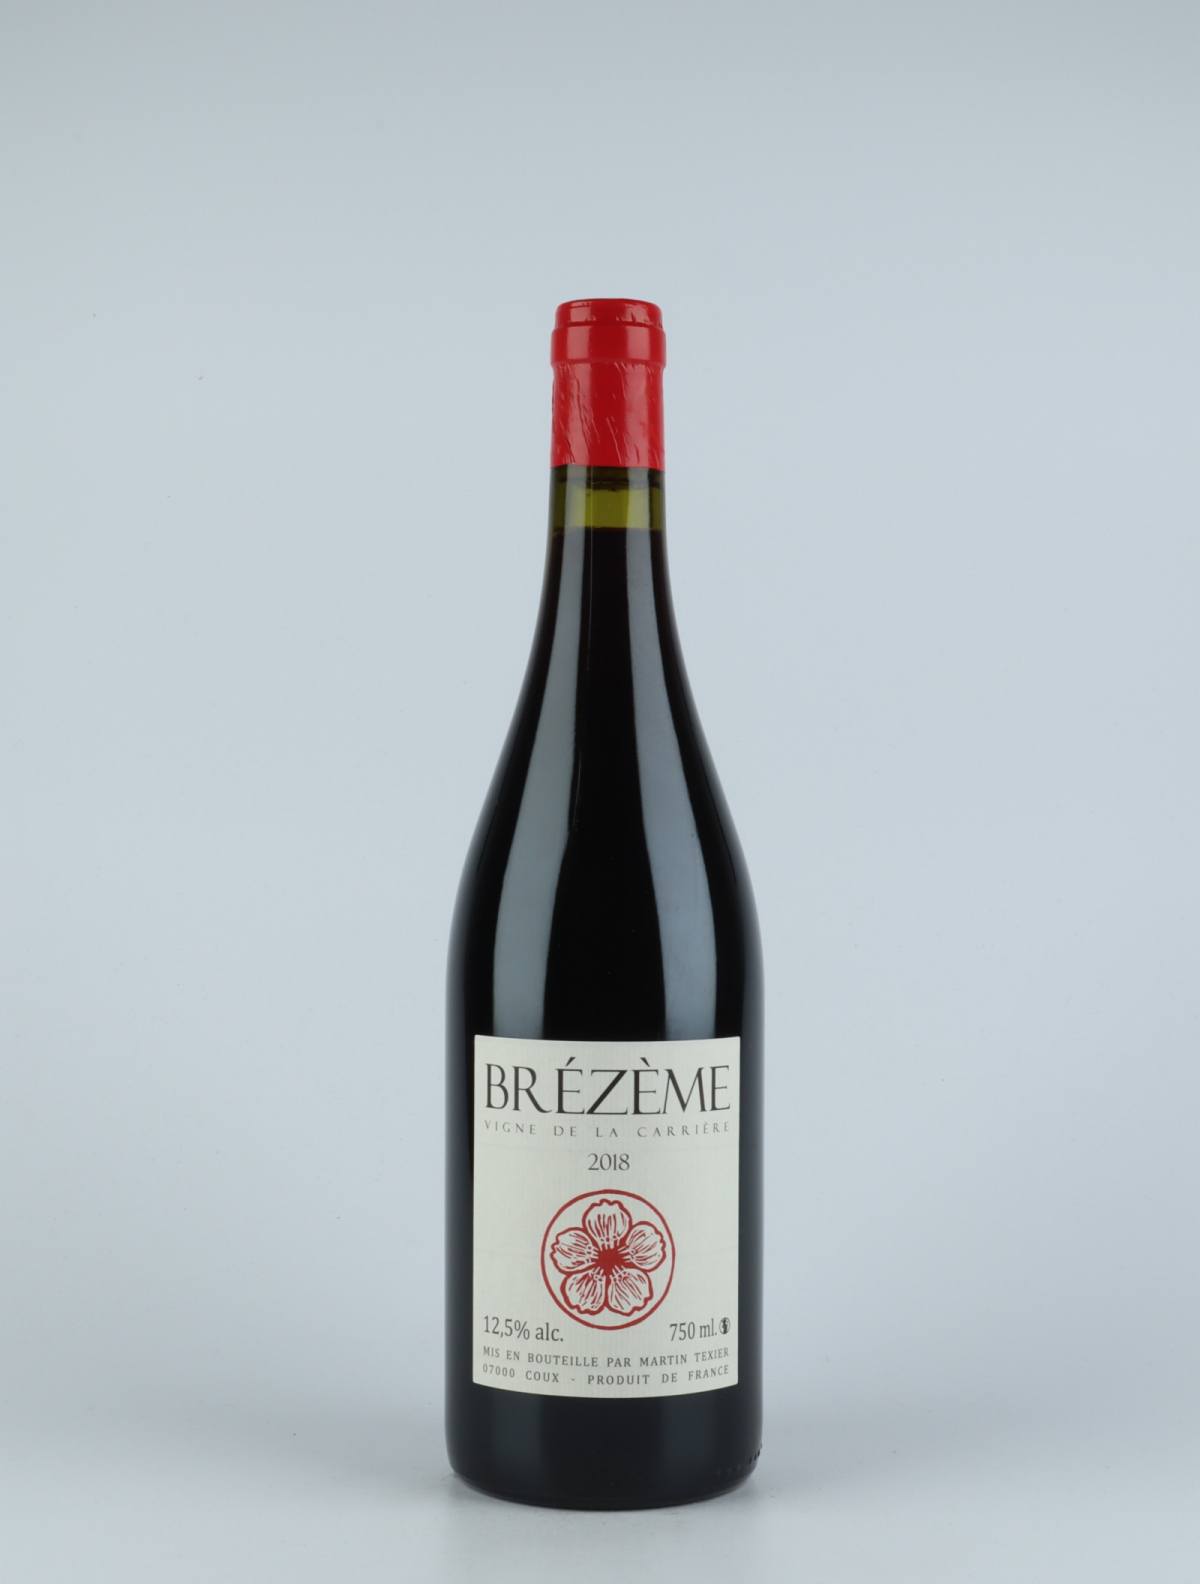 A bottle 2018 Brézème Red wine from Martin Texier, Rhône in France